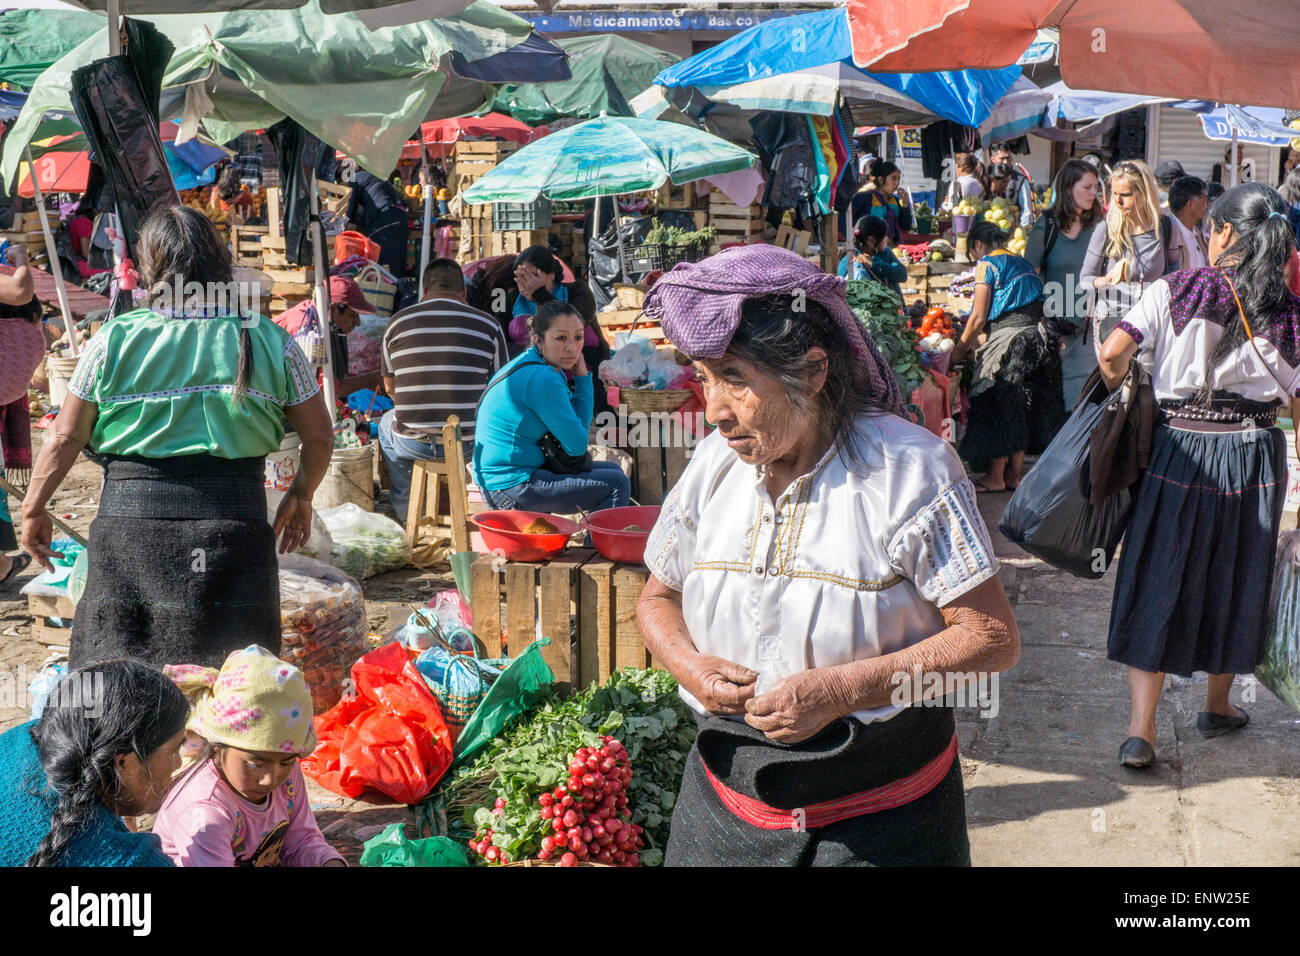 Occupato la scena commerciale al di fuori del mercato principale in cui i fornitori sedersi sotto gli ombrelloni a vendere azienda prodotti freschi di San Cristobal de las Casas Foto Stock